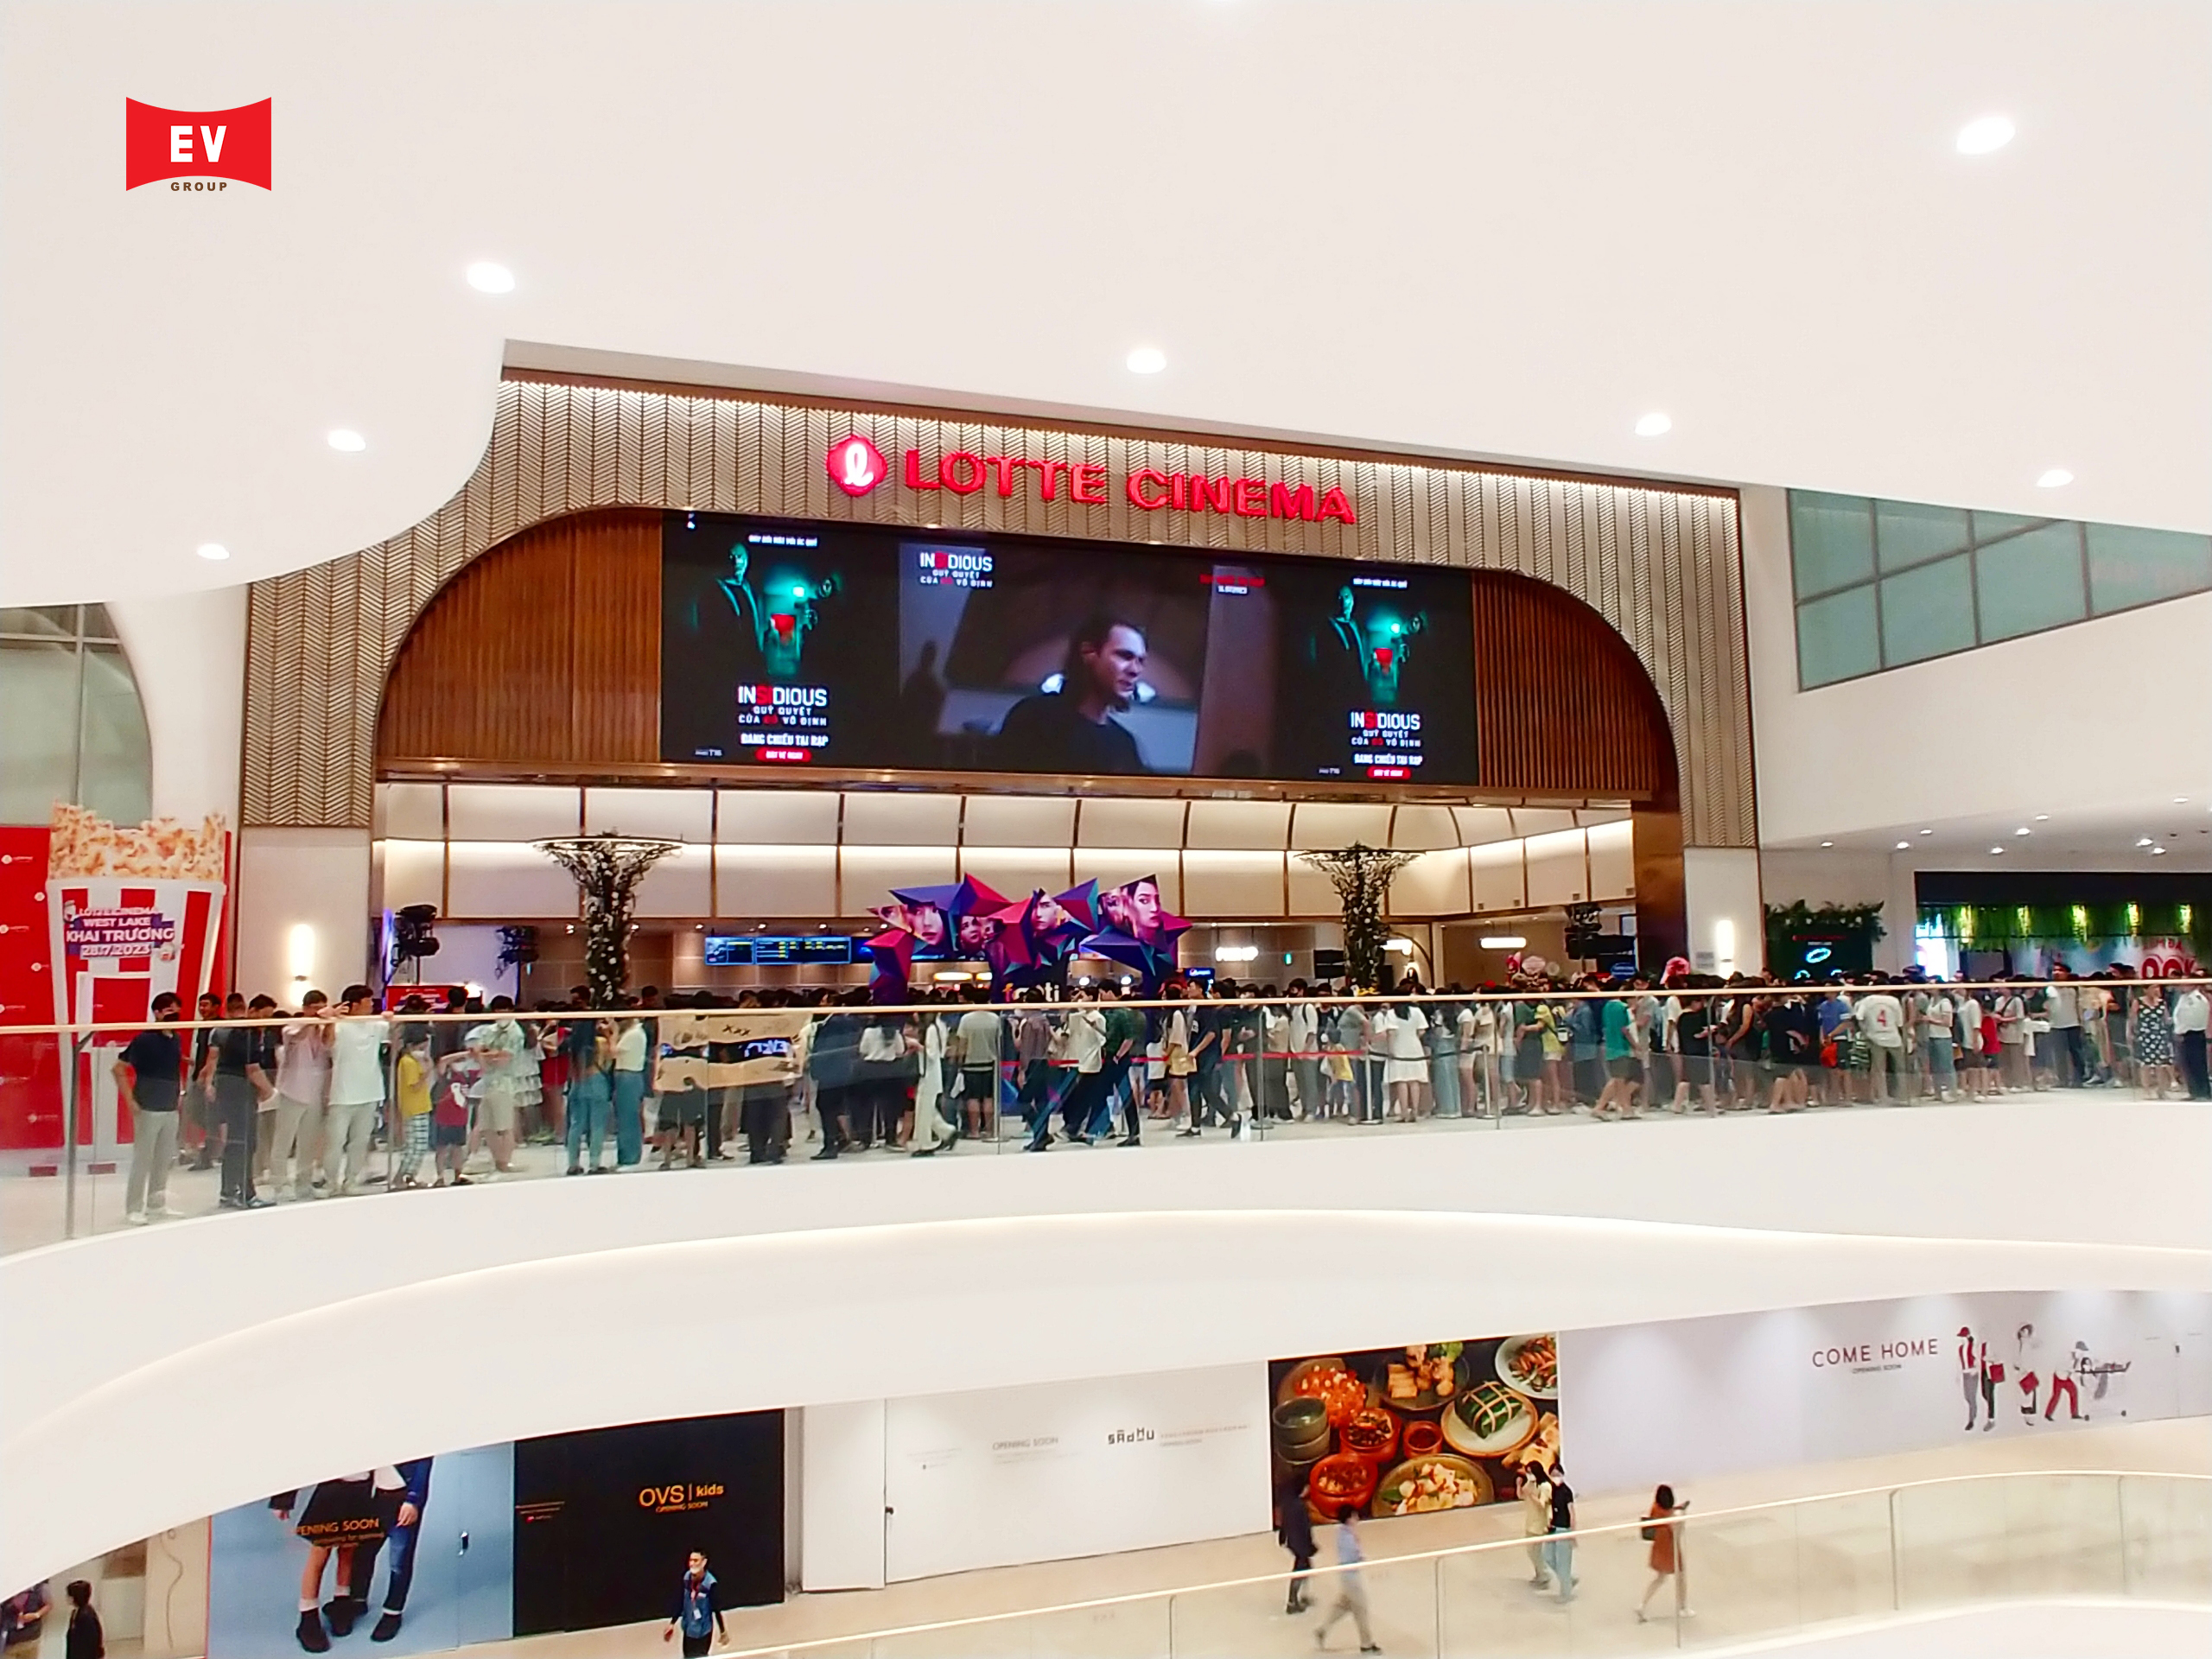 Cung cấp, lắp đặt hệ thống AV - Stage Lighting - BMG cho dự án Lotte Cinema (Lotte Mall Tây Hồ, Hà Nội)